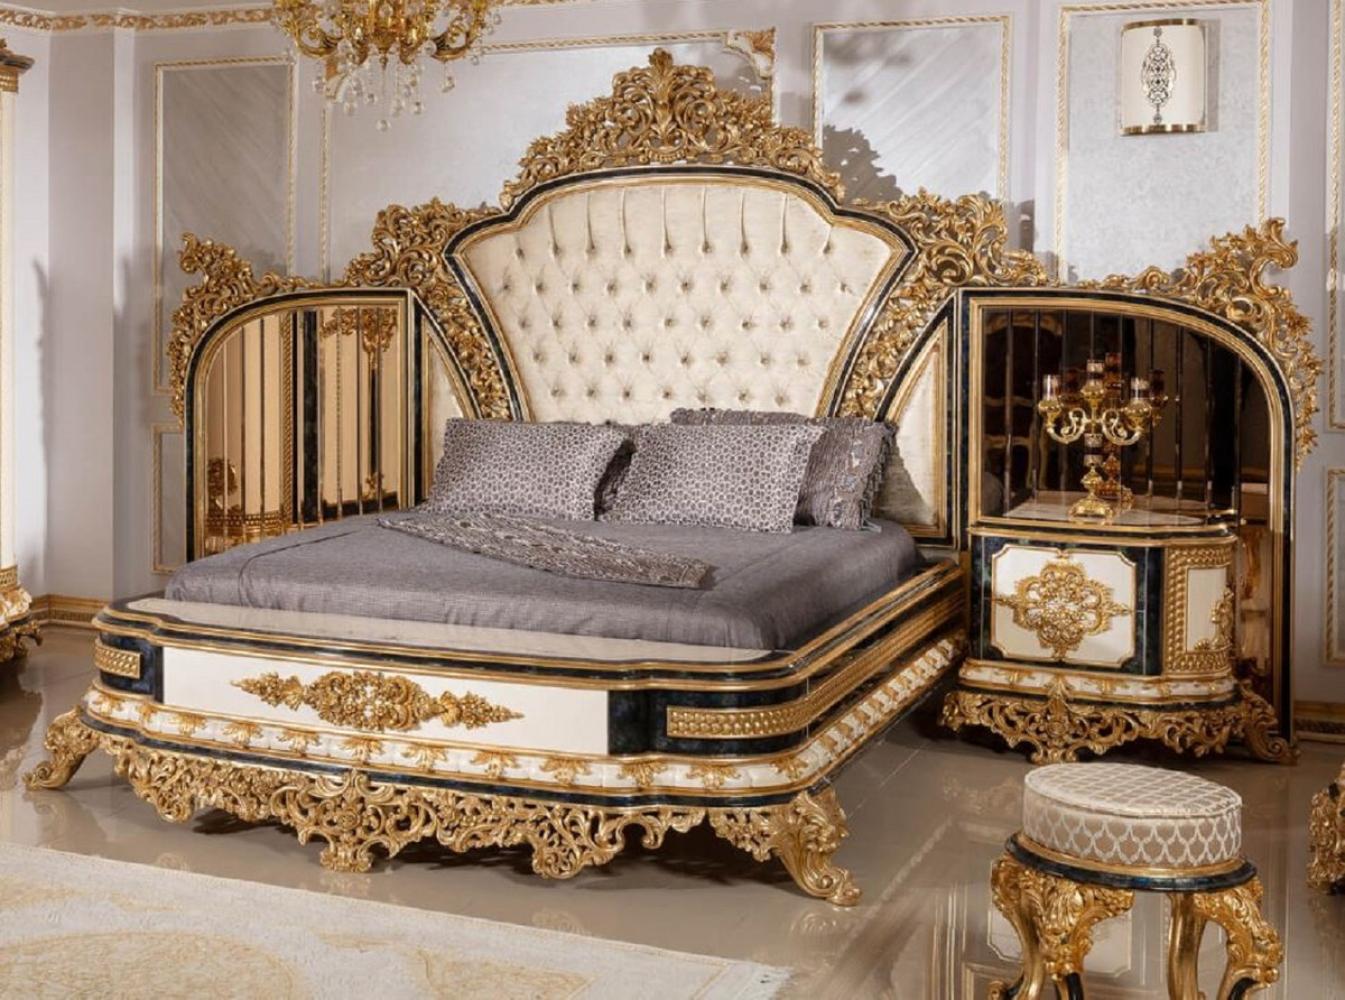 Casa Padrino Luxus Barock Schlafzimmer Set Gold / Weiß / Blau / Gold - 1 Doppelbett mit Kopfteil & 2 Nachtkommoden - Schlafzimmer Möbel im Barockstil - Edel & Prunkvoll Bild 1